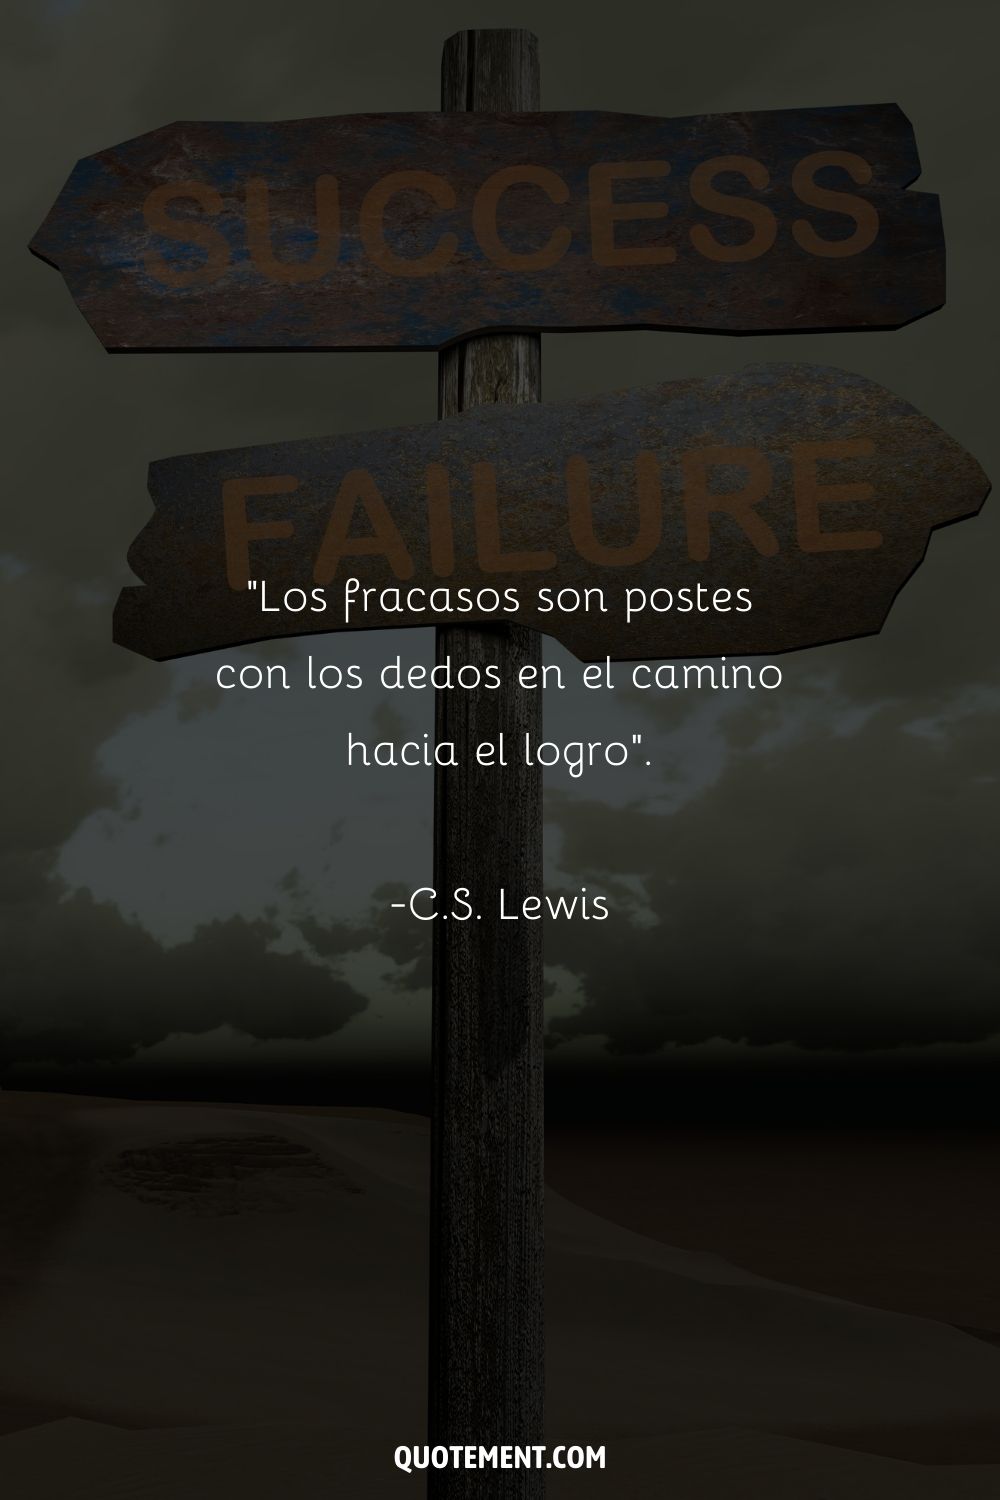 "Los fracasos son postes con los dedos en el camino hacia el logro". - C.S. Lewis